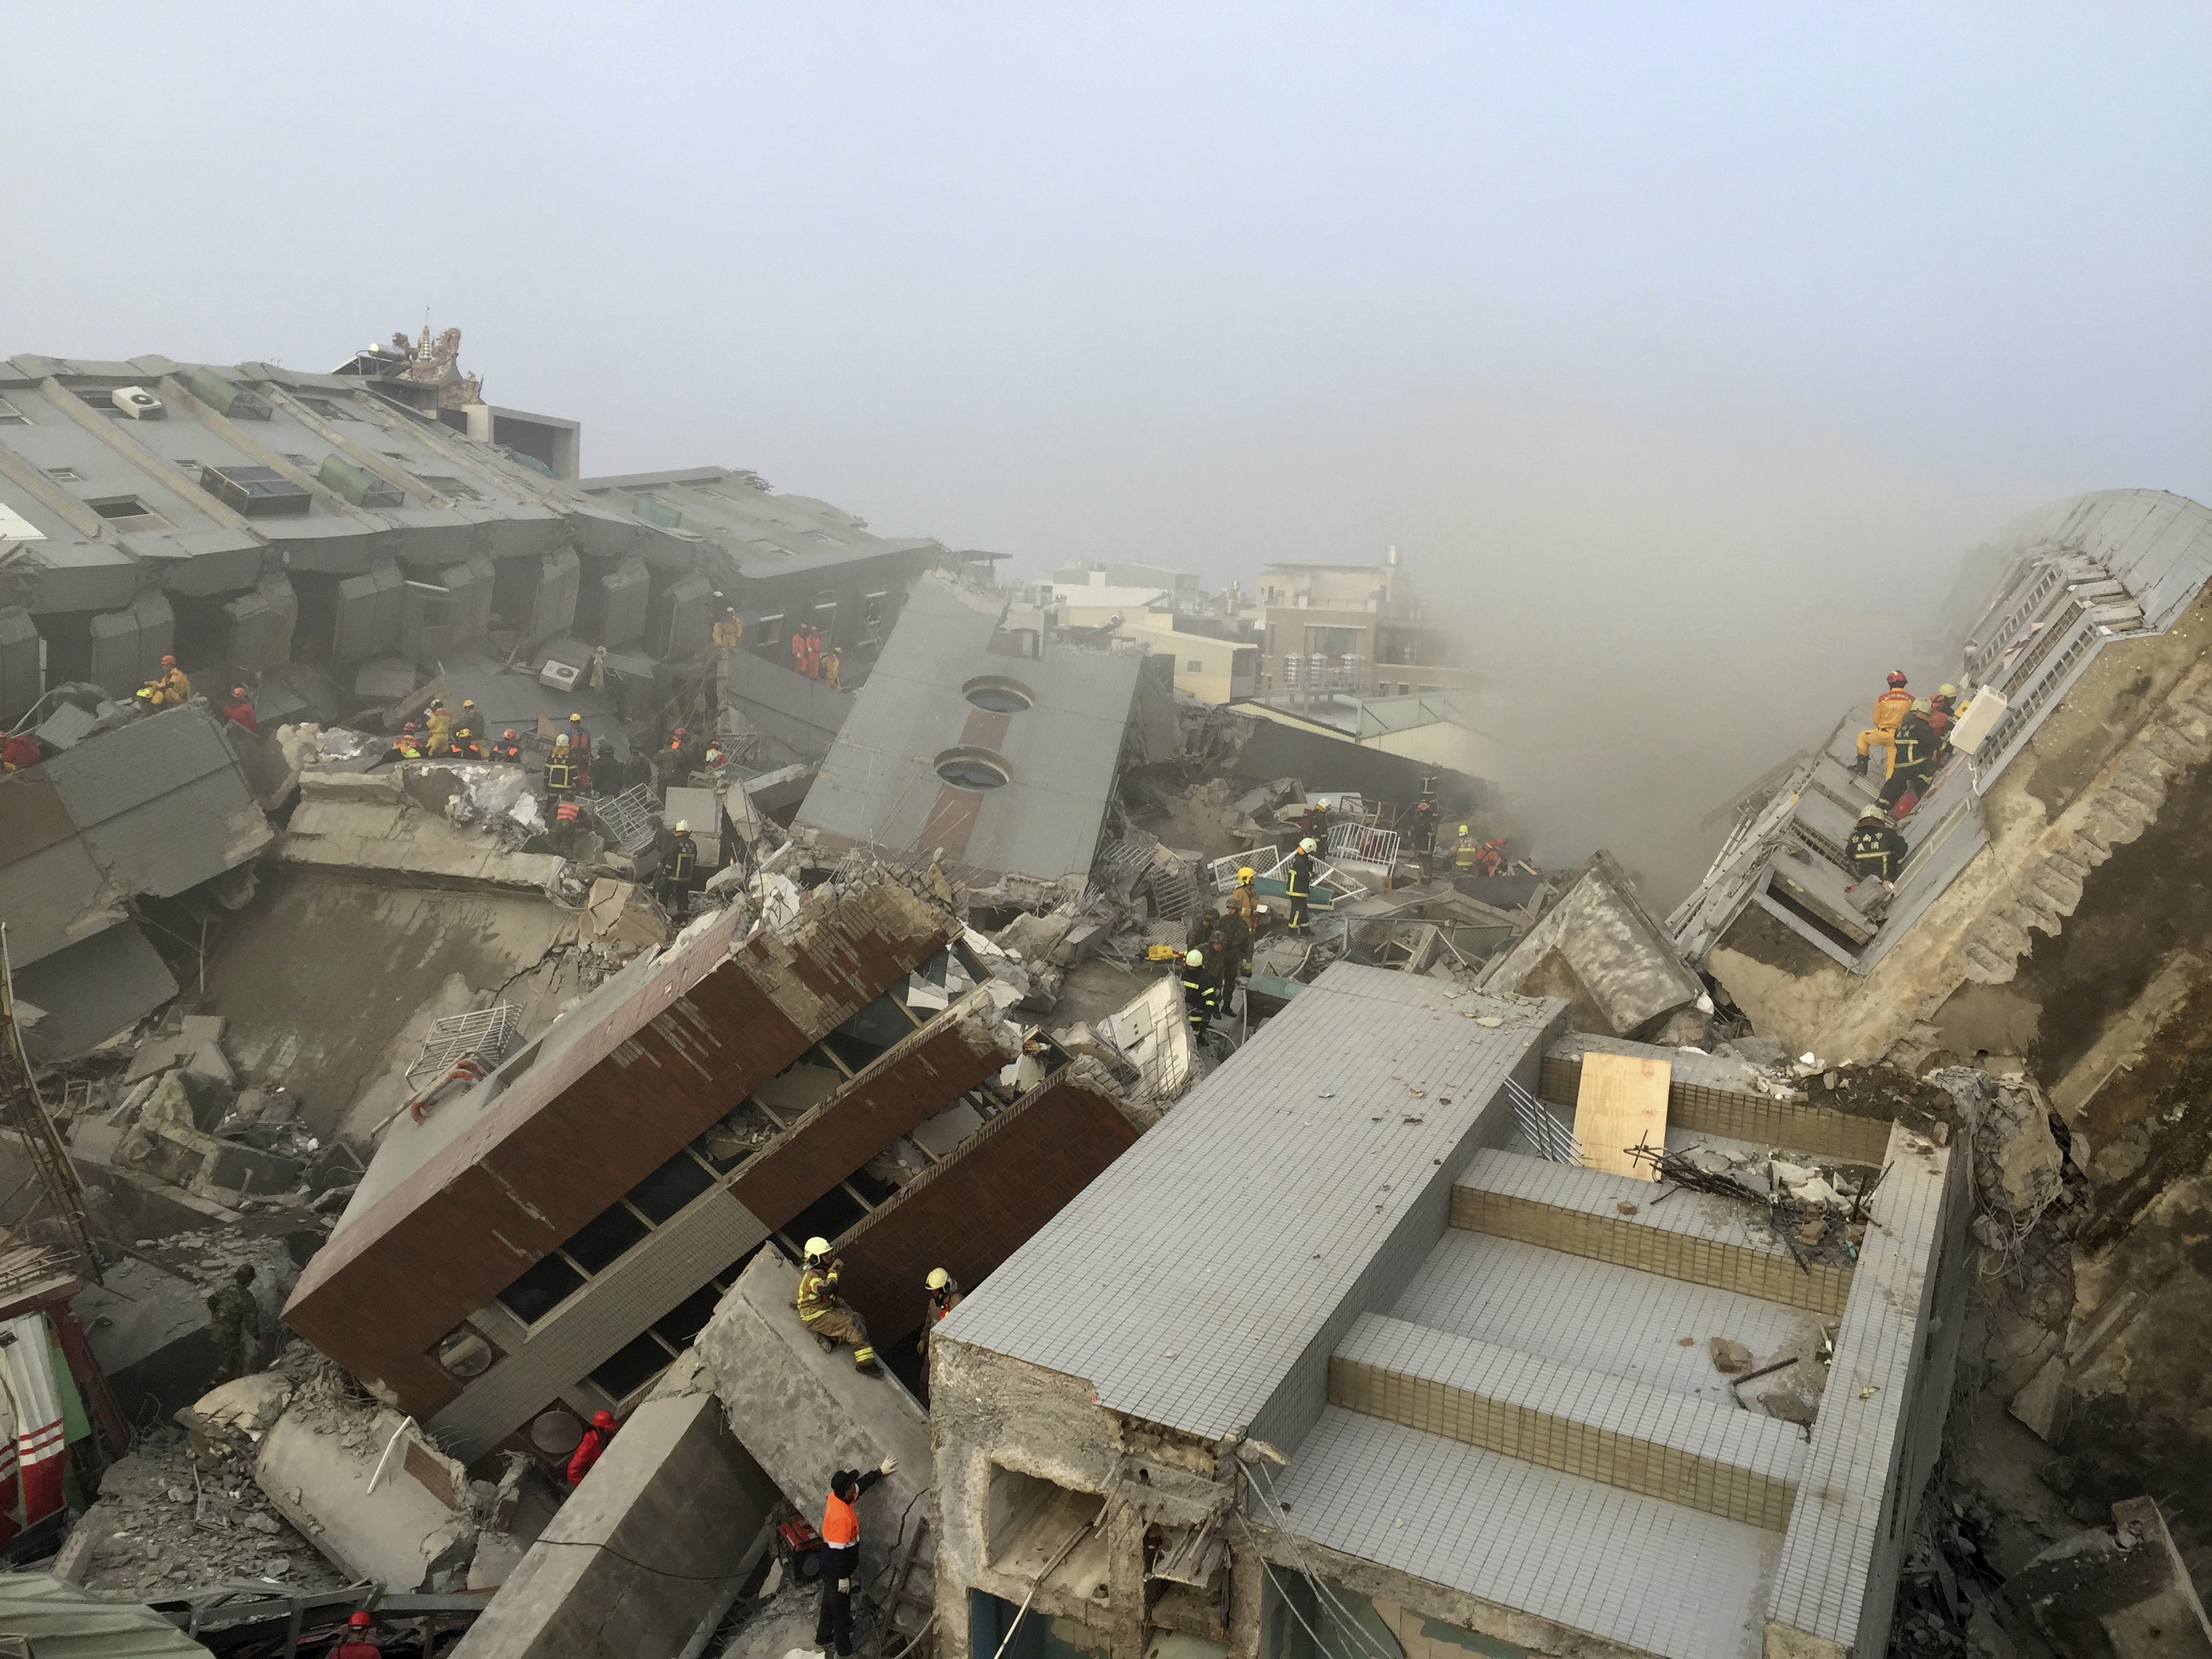 Фотографии землетрясений. Тайвань землетрясение 2018. Землетрясение на Тайване 1999. Землетрясение разрушения. Здания после землетрясения.